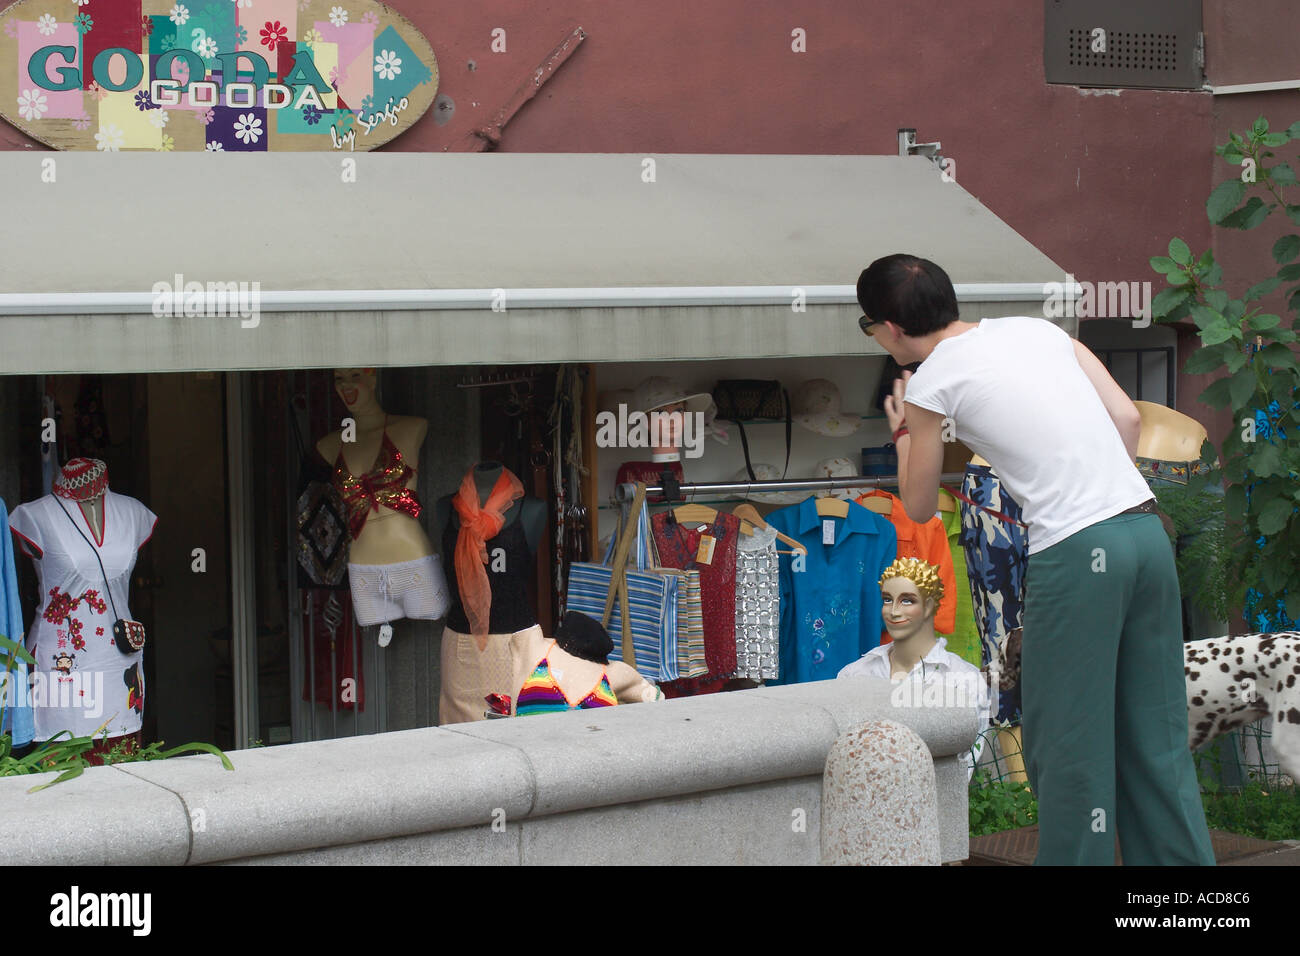 Geschäft im Zentrum von Ljubljana Laibach Slowenien Slovenia Foto Stock